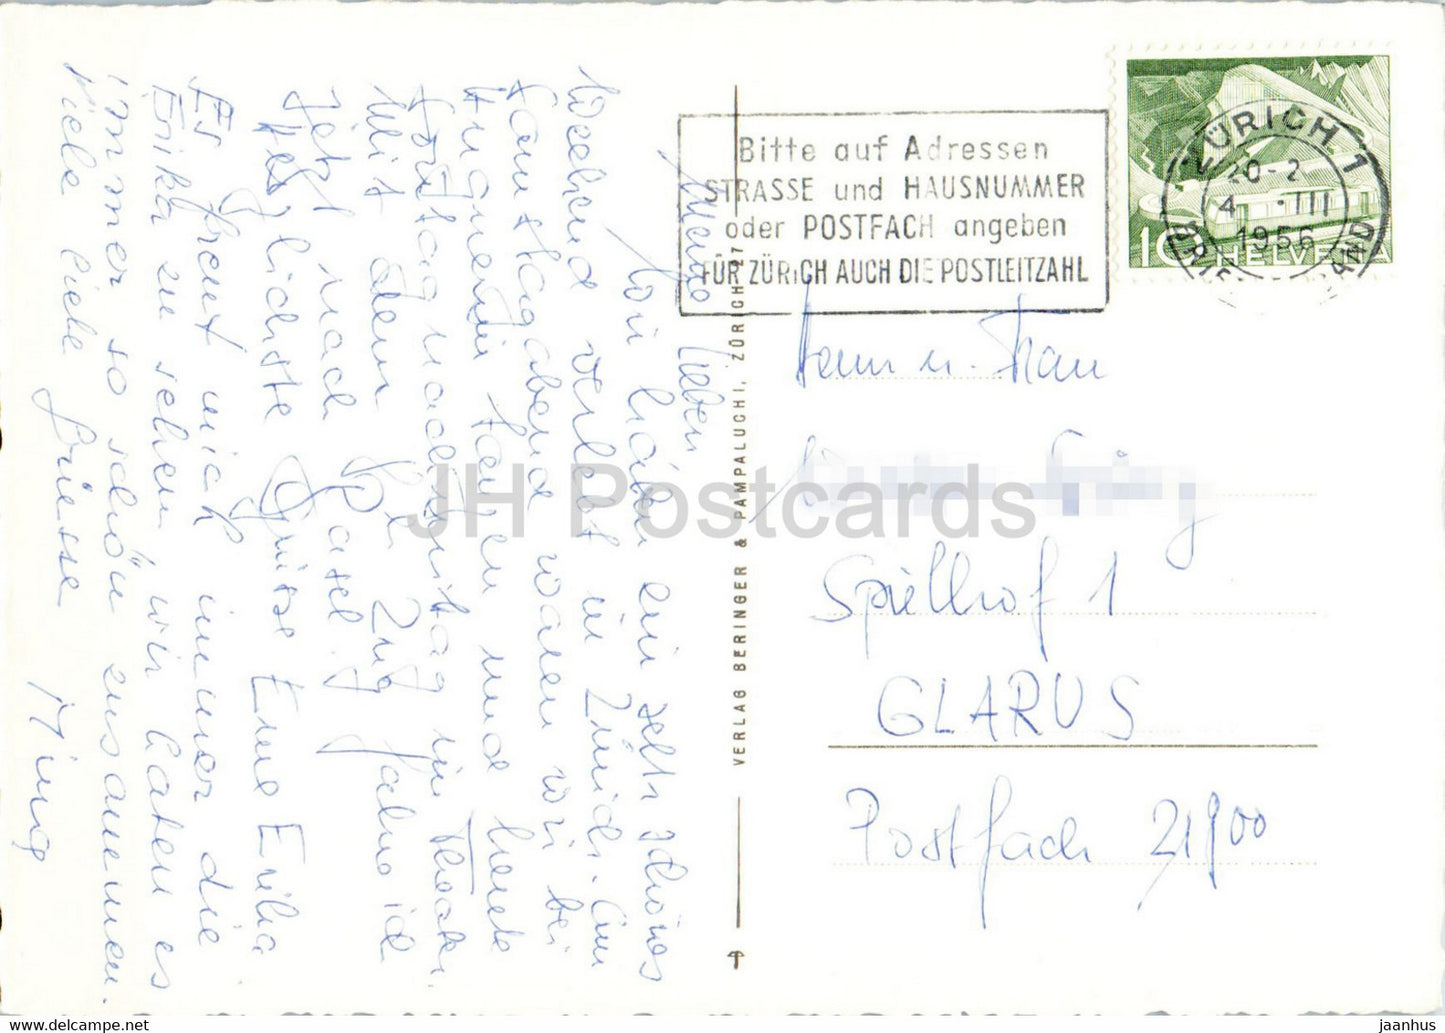 Am Zurichsee - oiseaux - Cygne - 8411 - carte postale ancienne - 1956 - Suisse - utilisé